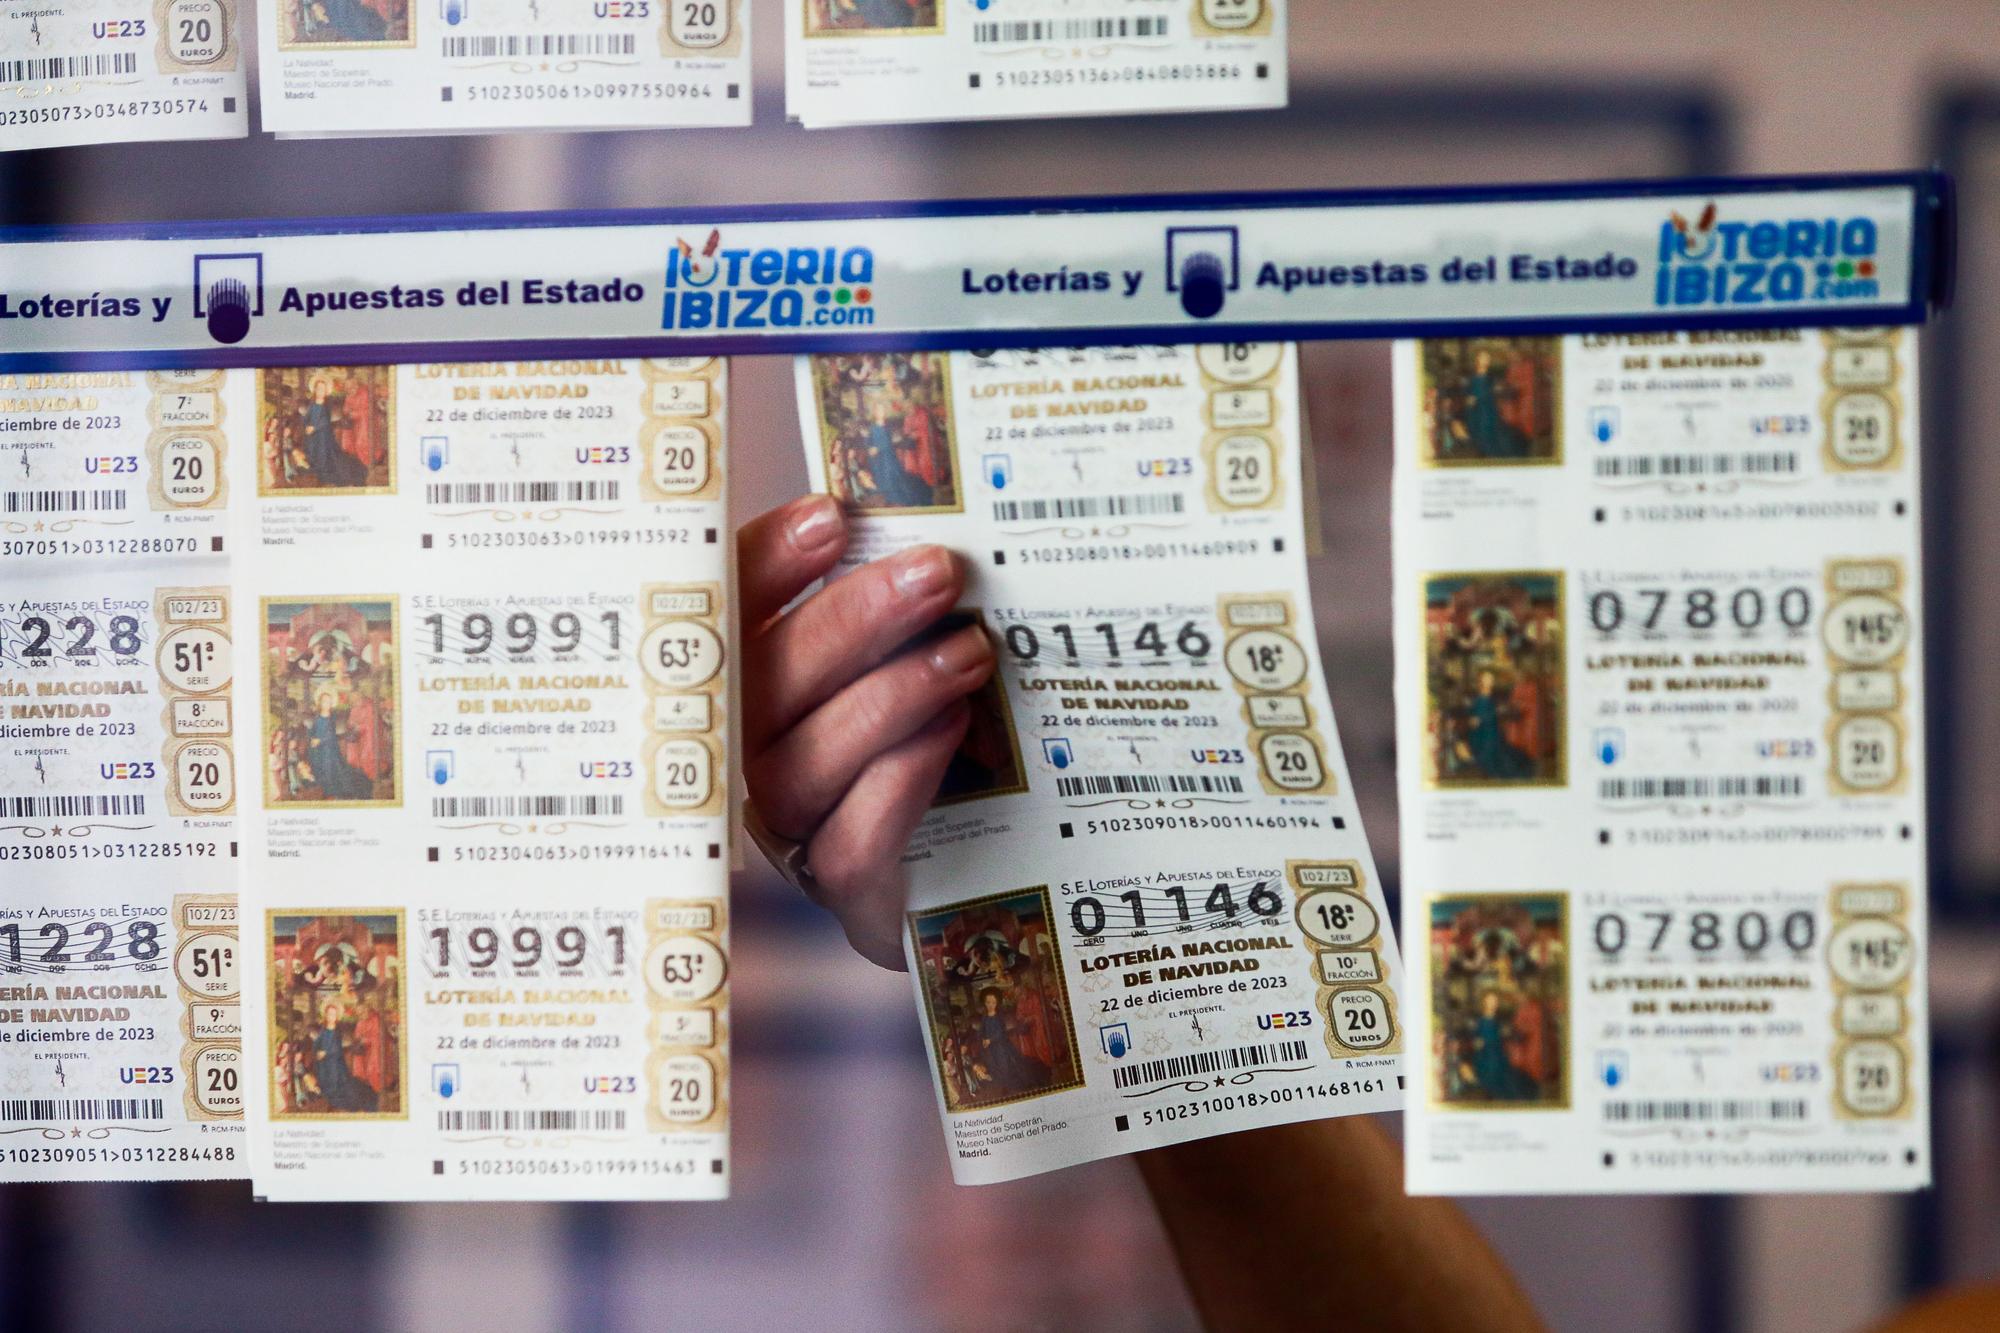 Galería de imágenes de la administración de lotería de la calle Pere Francesc de Ibiza